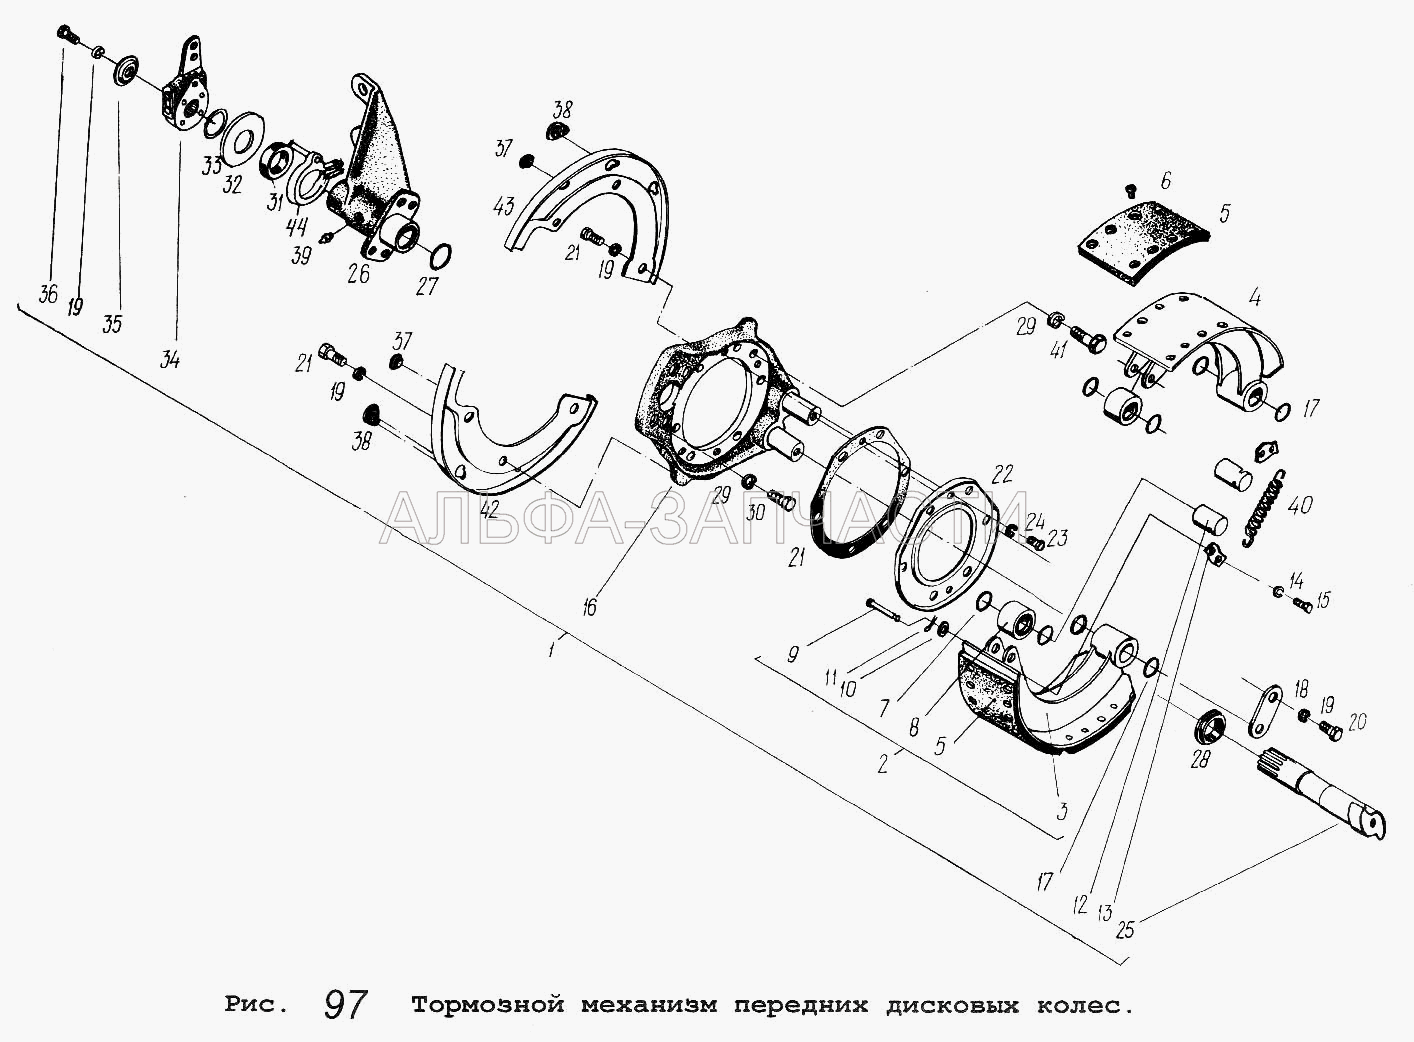 Тормозной механизм передних дисковых колес (5336-3501107 Ролик в сборе) 